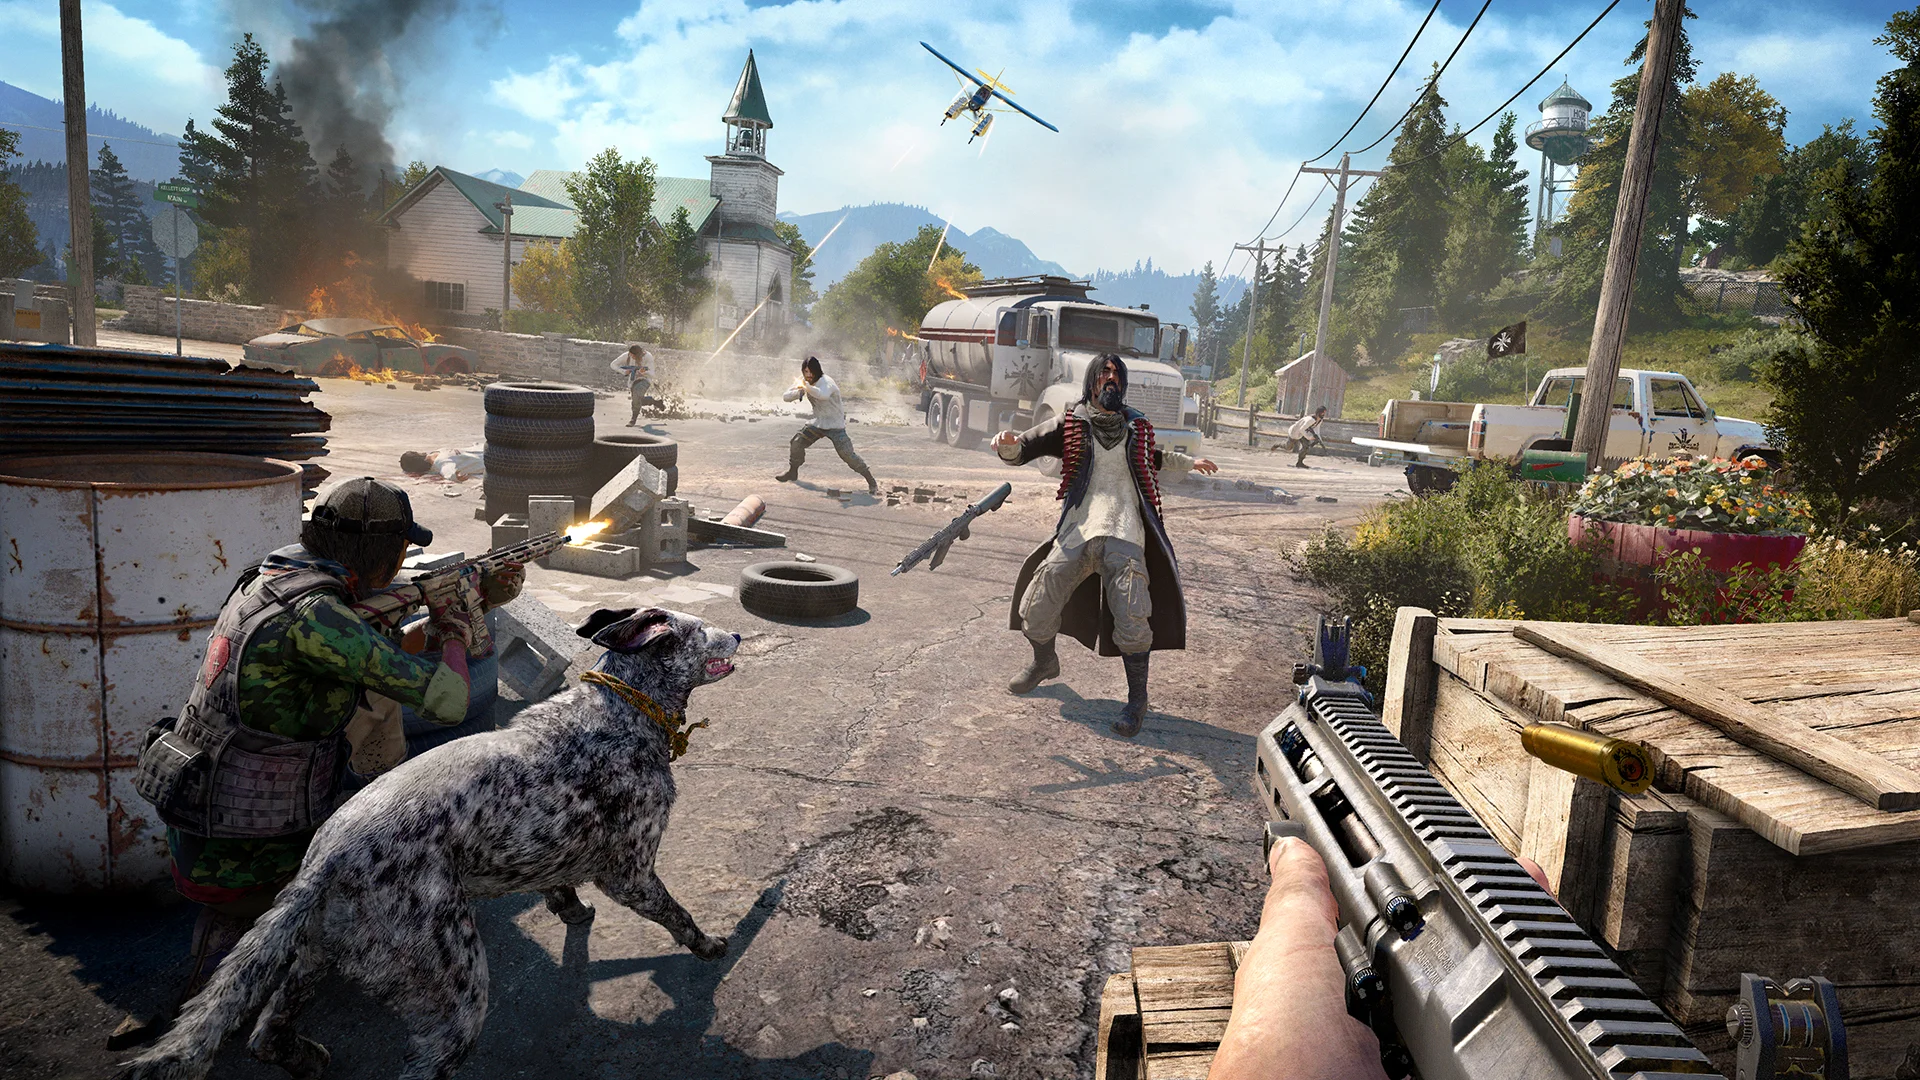 Far Cry 5 уже вышла и, как и любая новая игра, предъявляет особые требования к «железу». Если у вас есть Xbox One или PlayStation 4, то вы можете играть в нее без каких-либо проблем, однако выше 30 FPS вы не получите даже на Xbox One X и PS4 Pro. Чтобы выжать из игры максимум — нужен ПК, причем такой, чтобы потянул игру на ультра-настройках, иначе неинтересно. Ну и, разумеется, чтобы частота кадров не опускалась ниже 60 FPS.